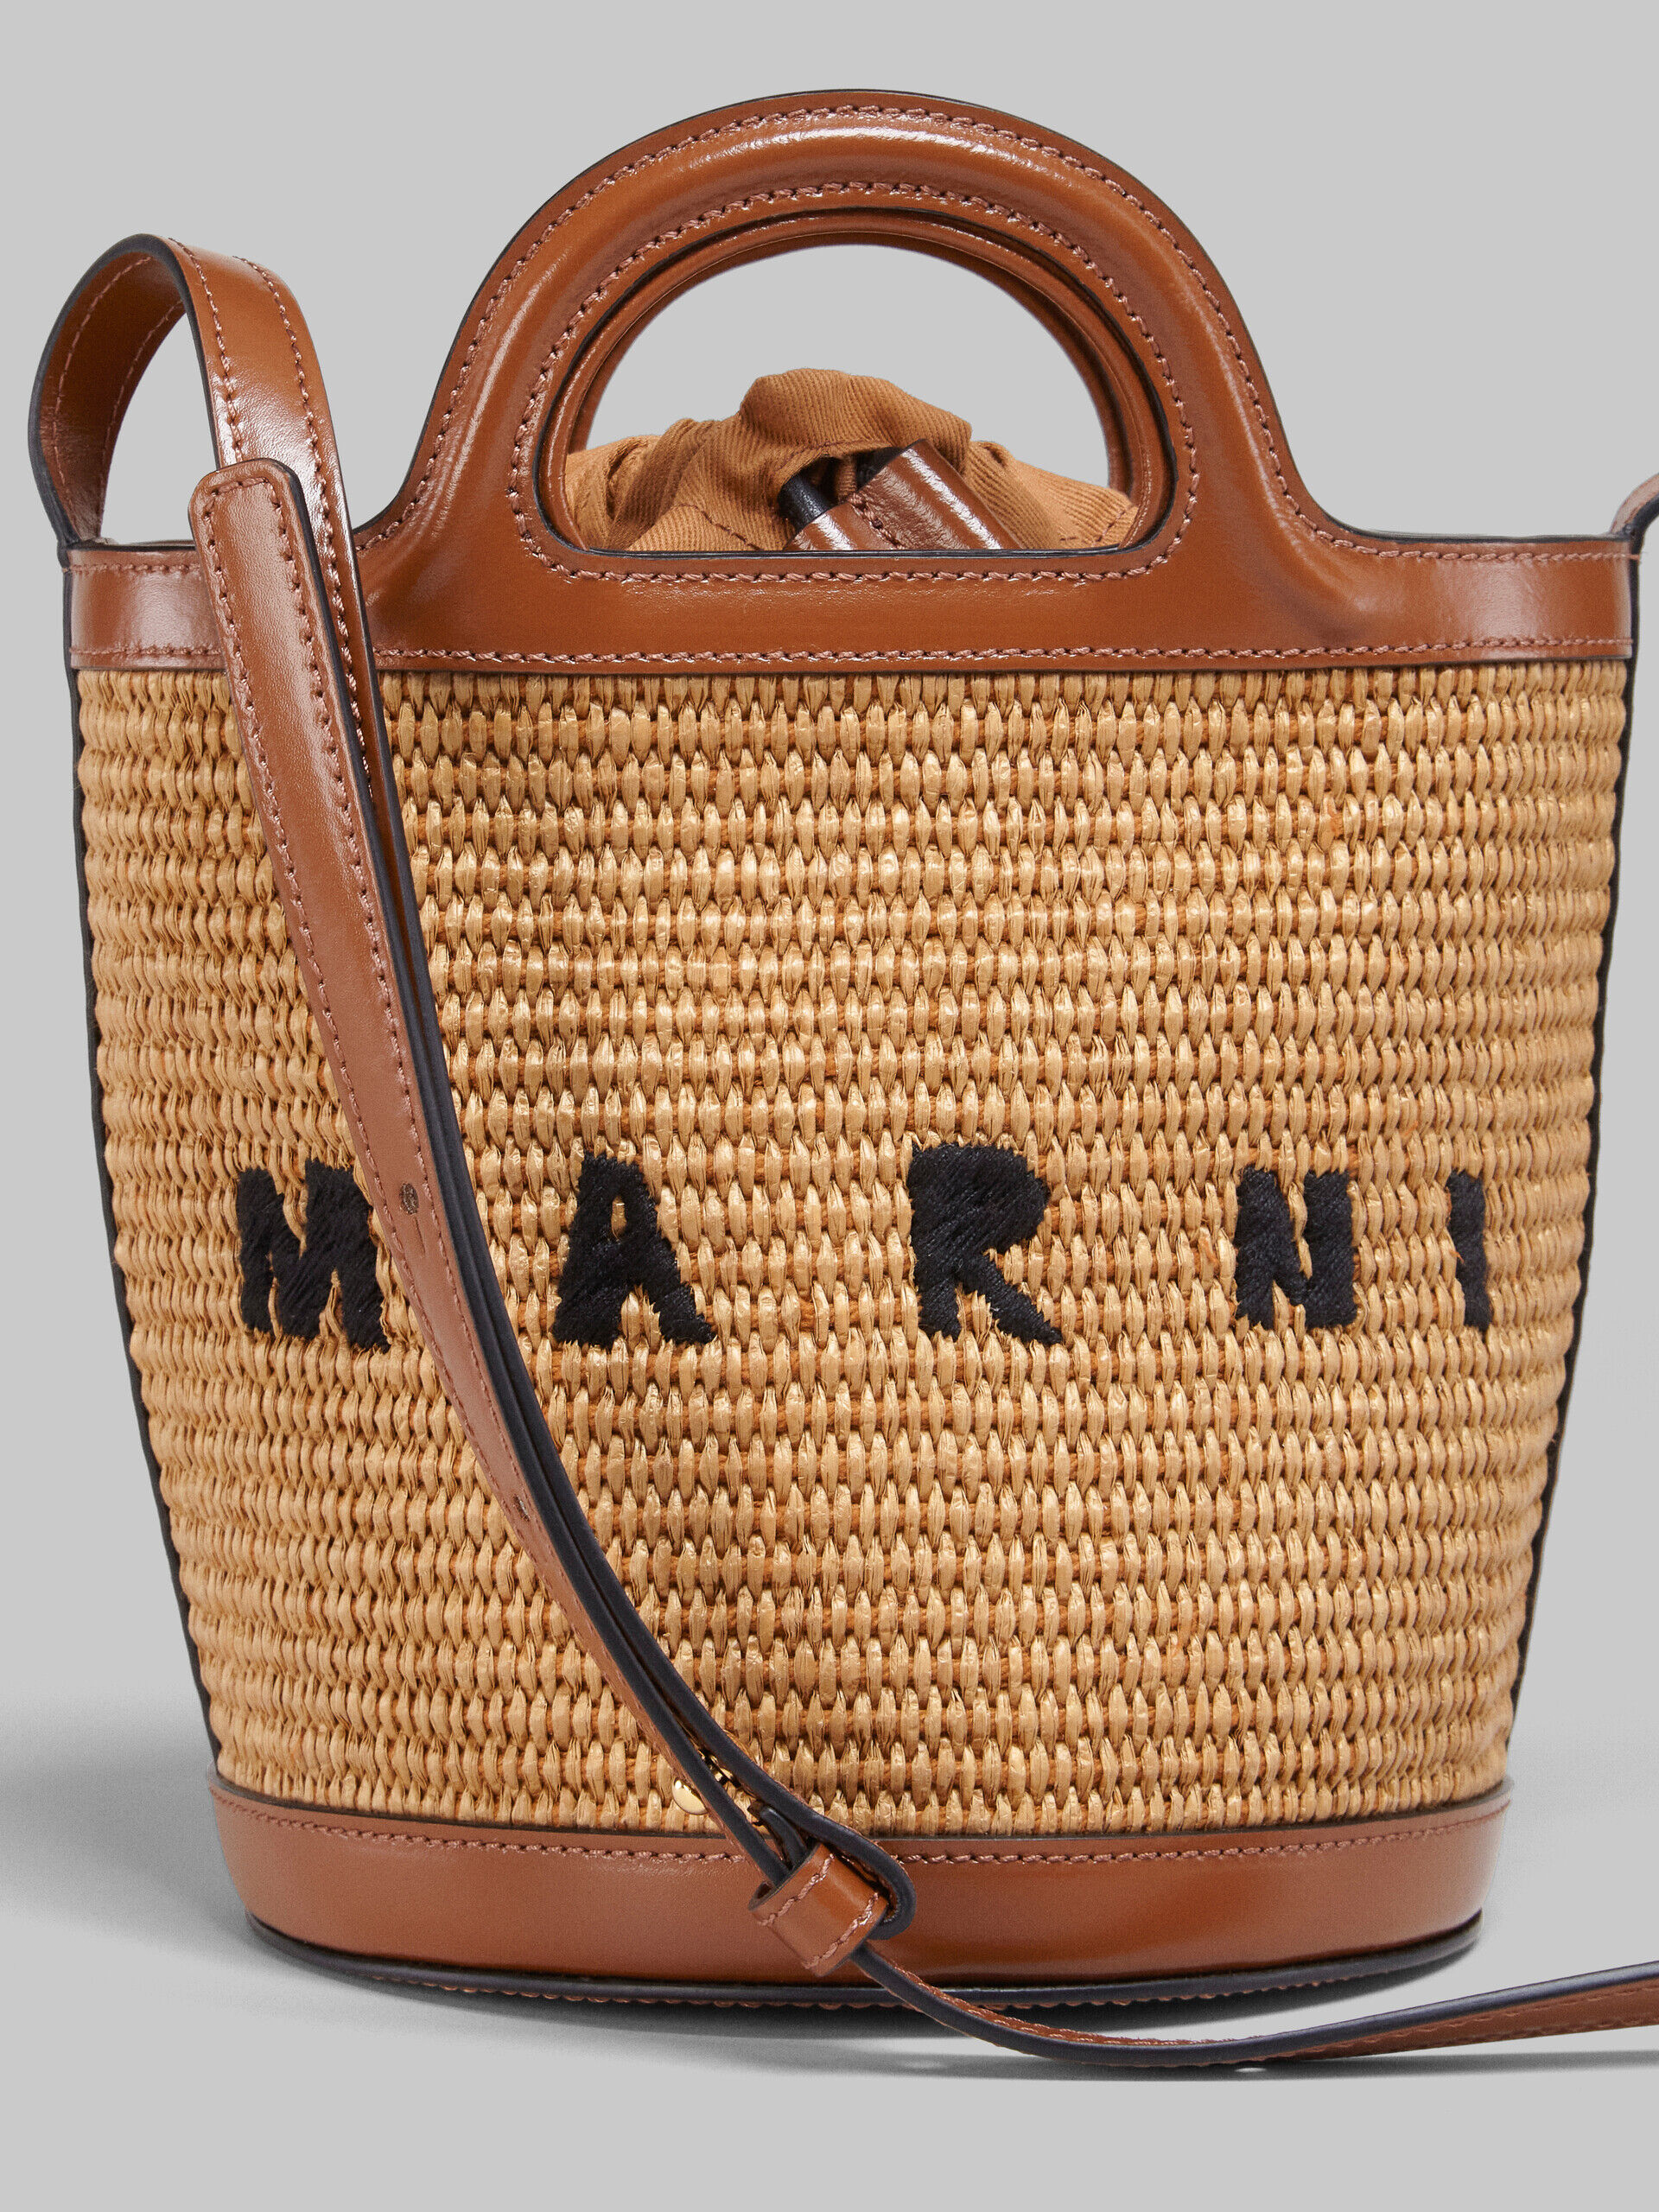 マルニのストローバッグですマルニ TROPICALIA BASKET BAG SMALL